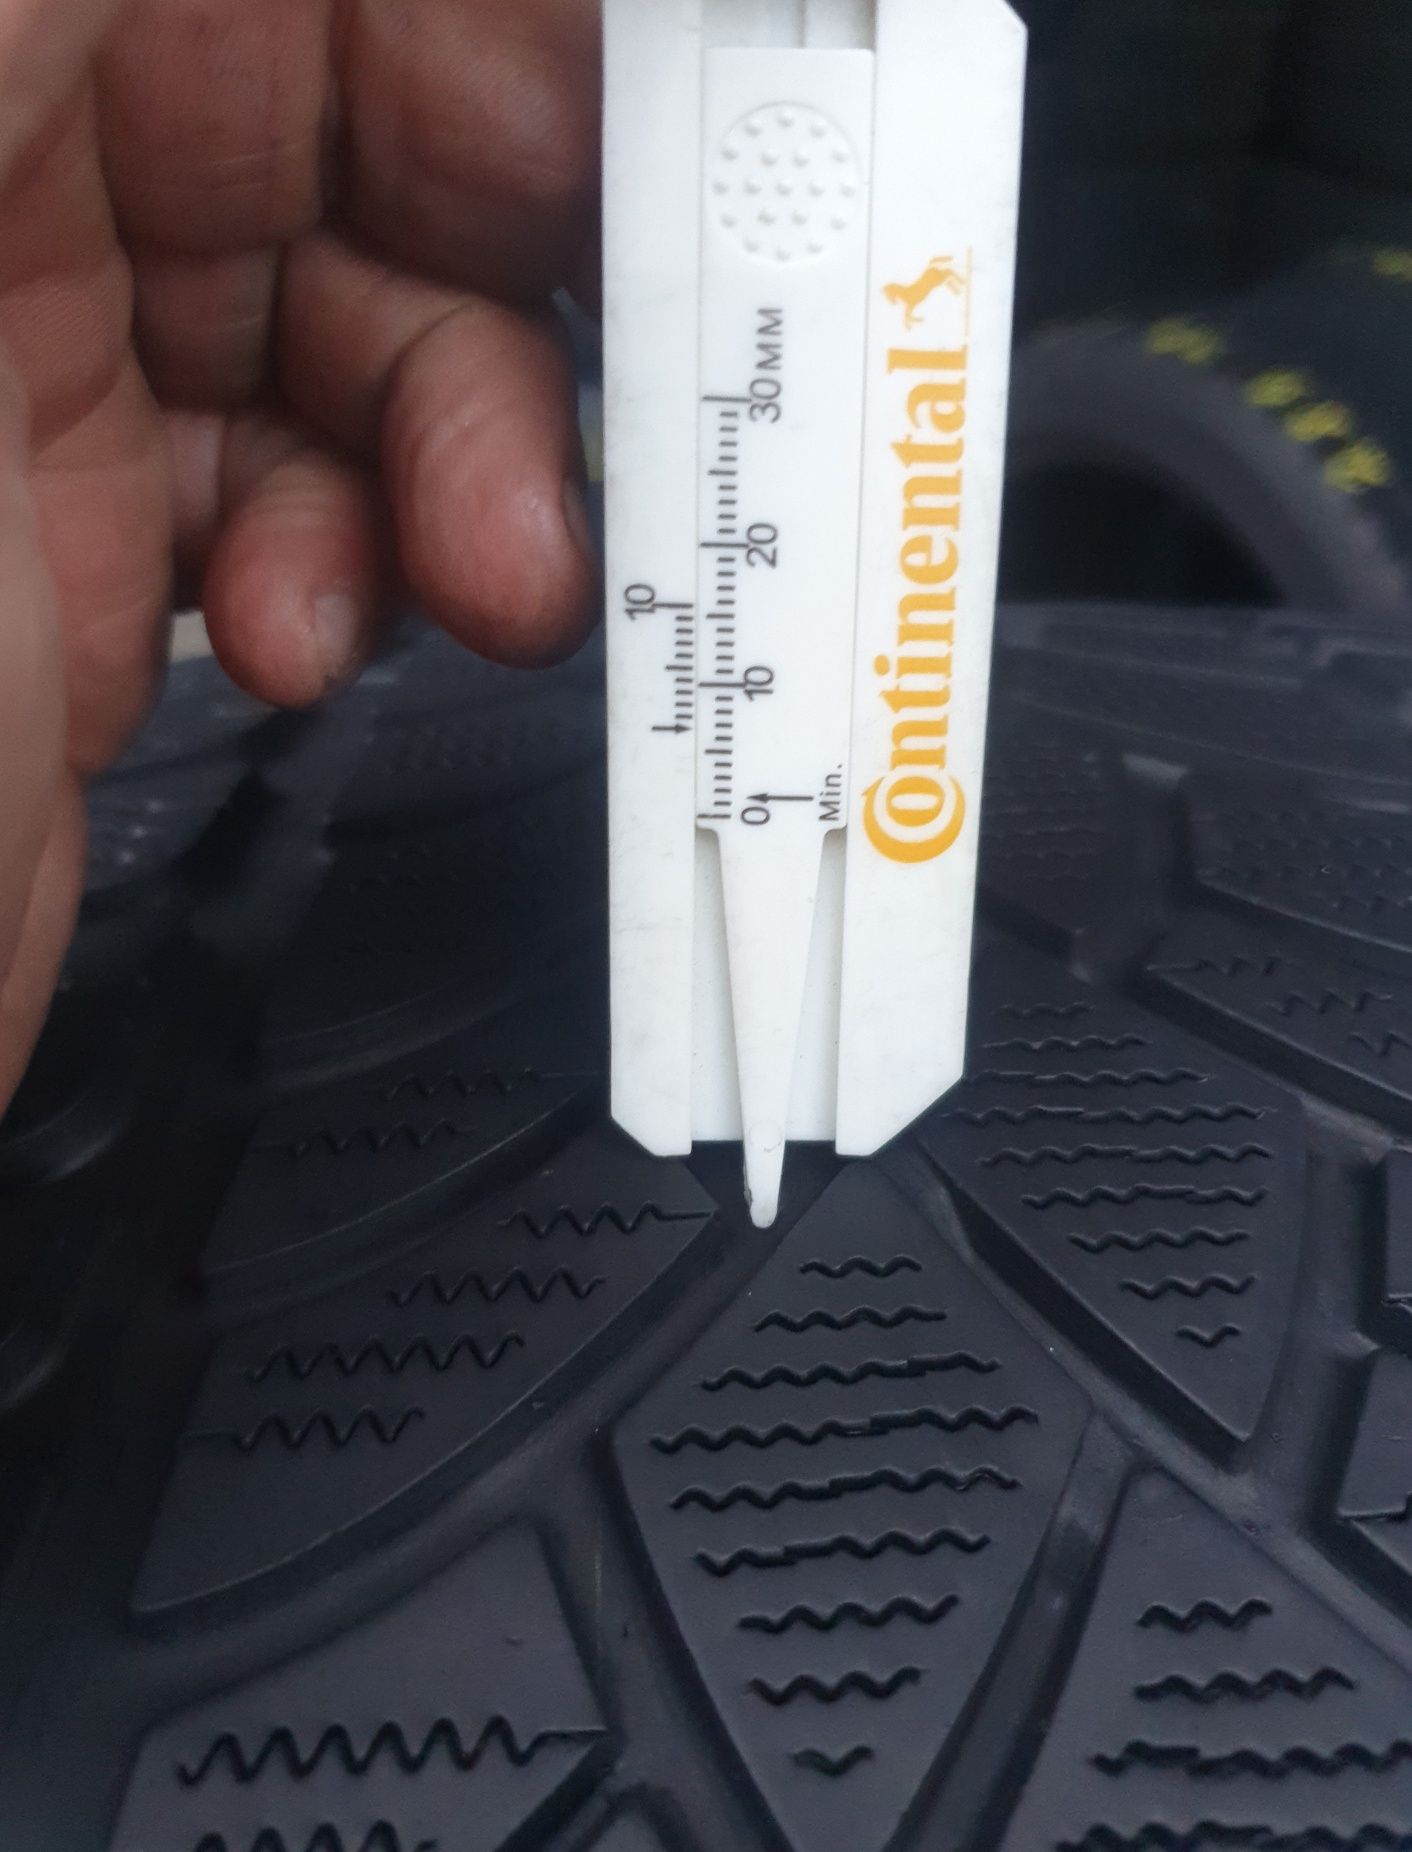 2 Anvelope iarnă Dunlop 295 30 R19  impecabile profil 6.5 mm.